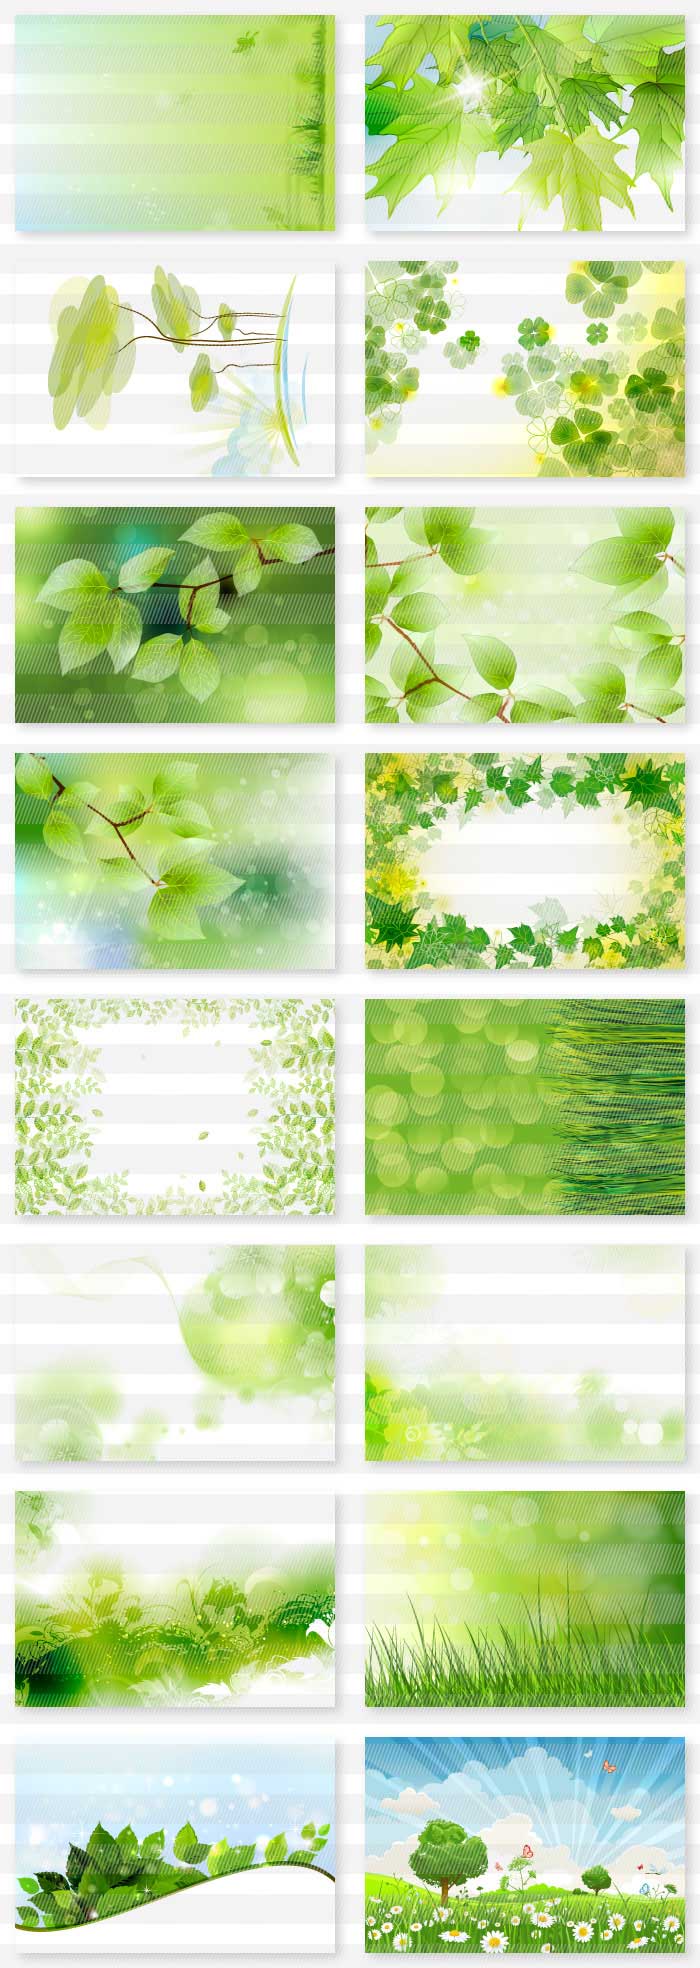 緑 葉 草木の風景の背景素材集 Word Excel Powepointで簡単に使えるイラストと背景素材集